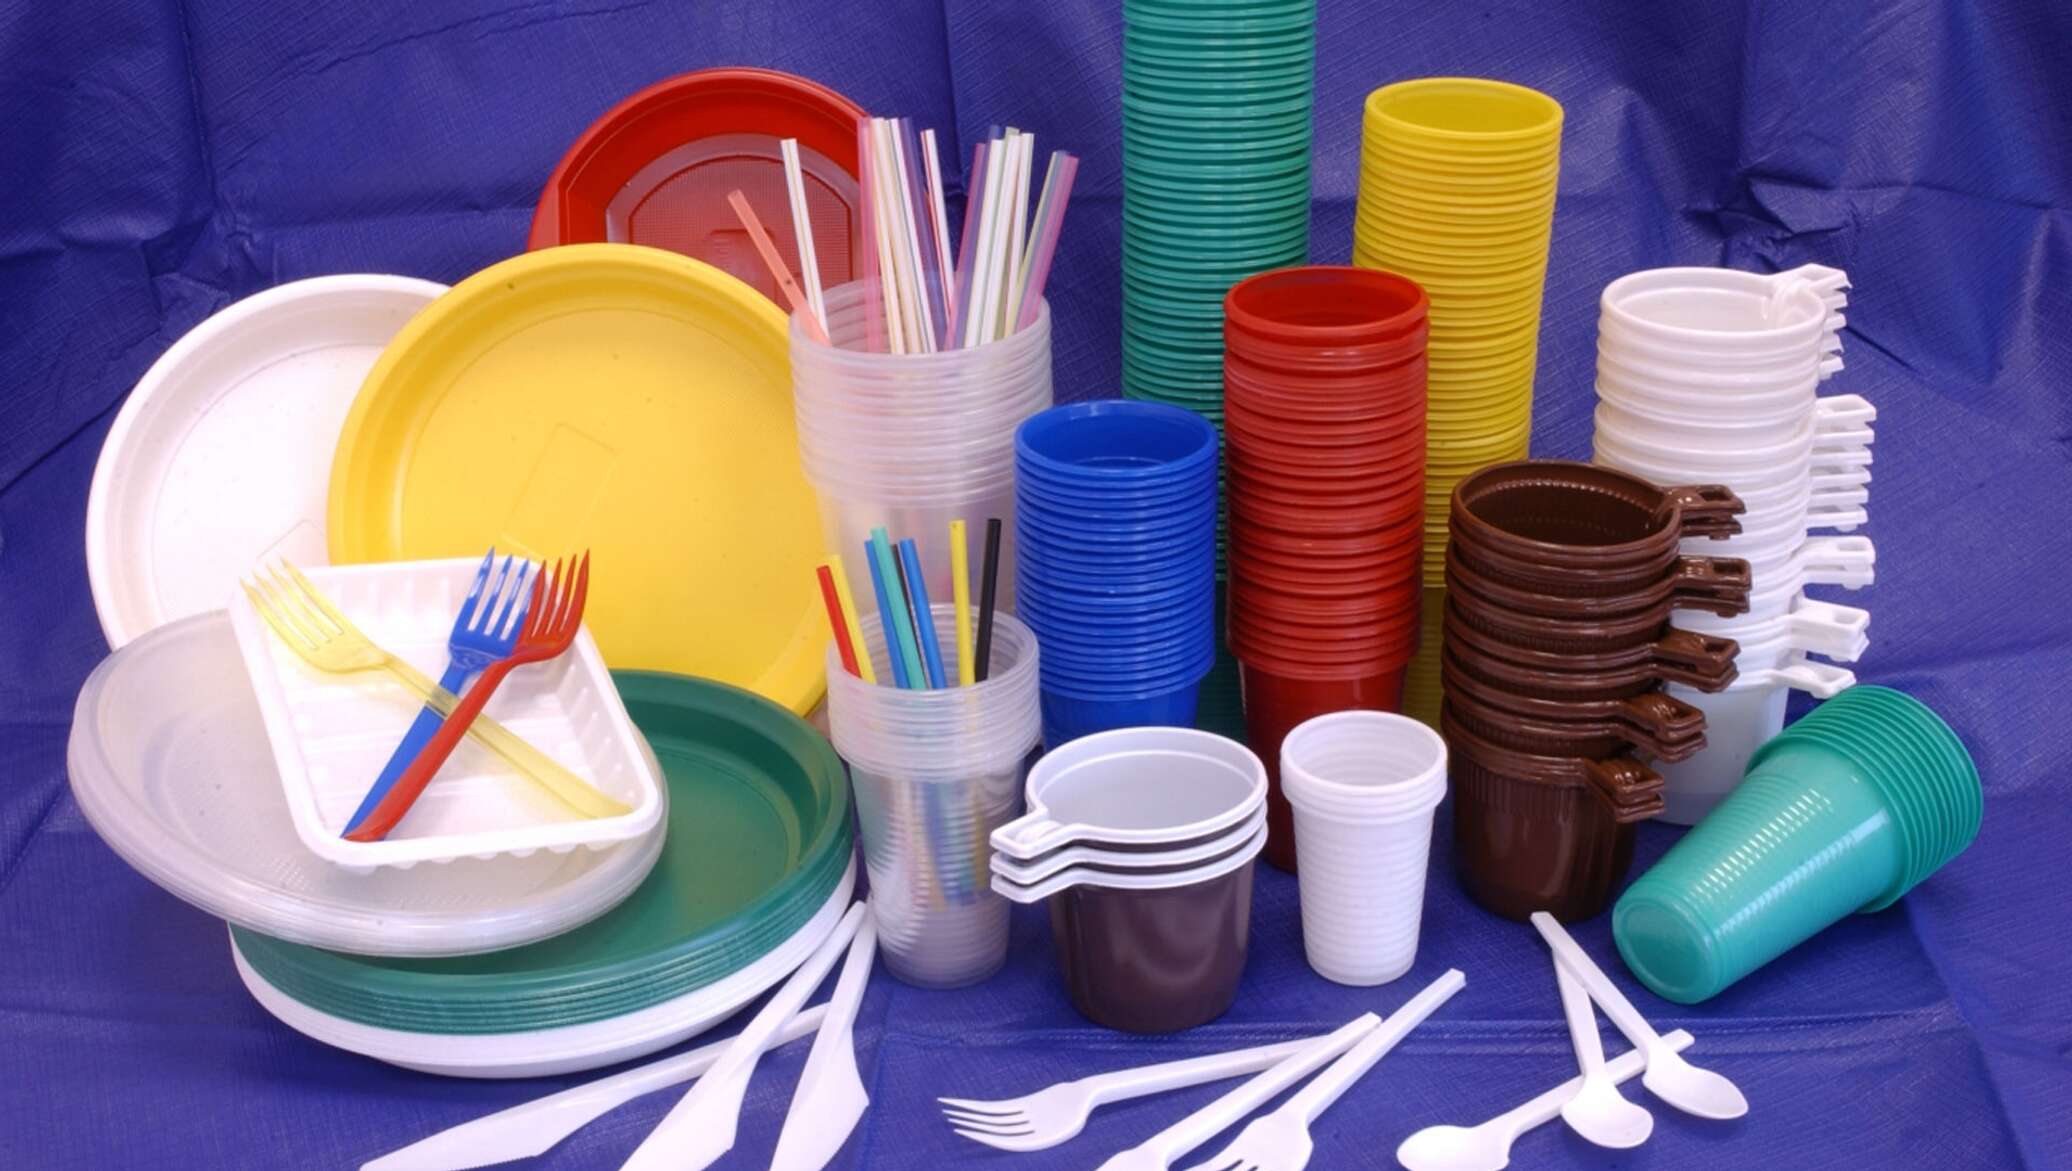 Бытовая товары группы. Одноразовая посуда. Изделия из пластмассы. Пластмассовая посуда. Пластмассовая одноразовая посуда.